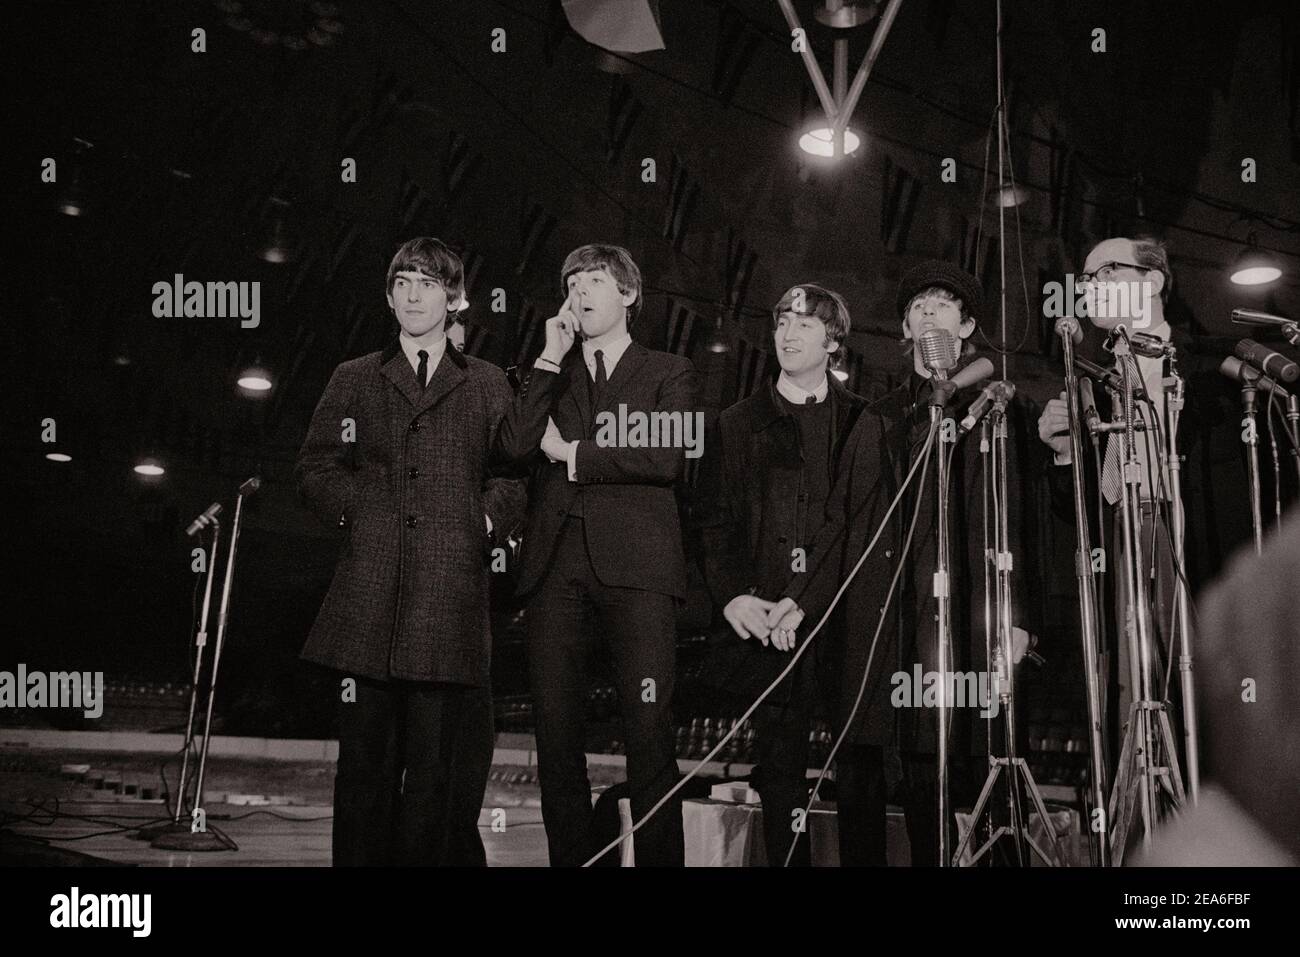 Arrivée des Beatles et conférence de presse (rock et rollers britanniques). ÉTATS-UNIS. 11 février 1964 Banque D'Images